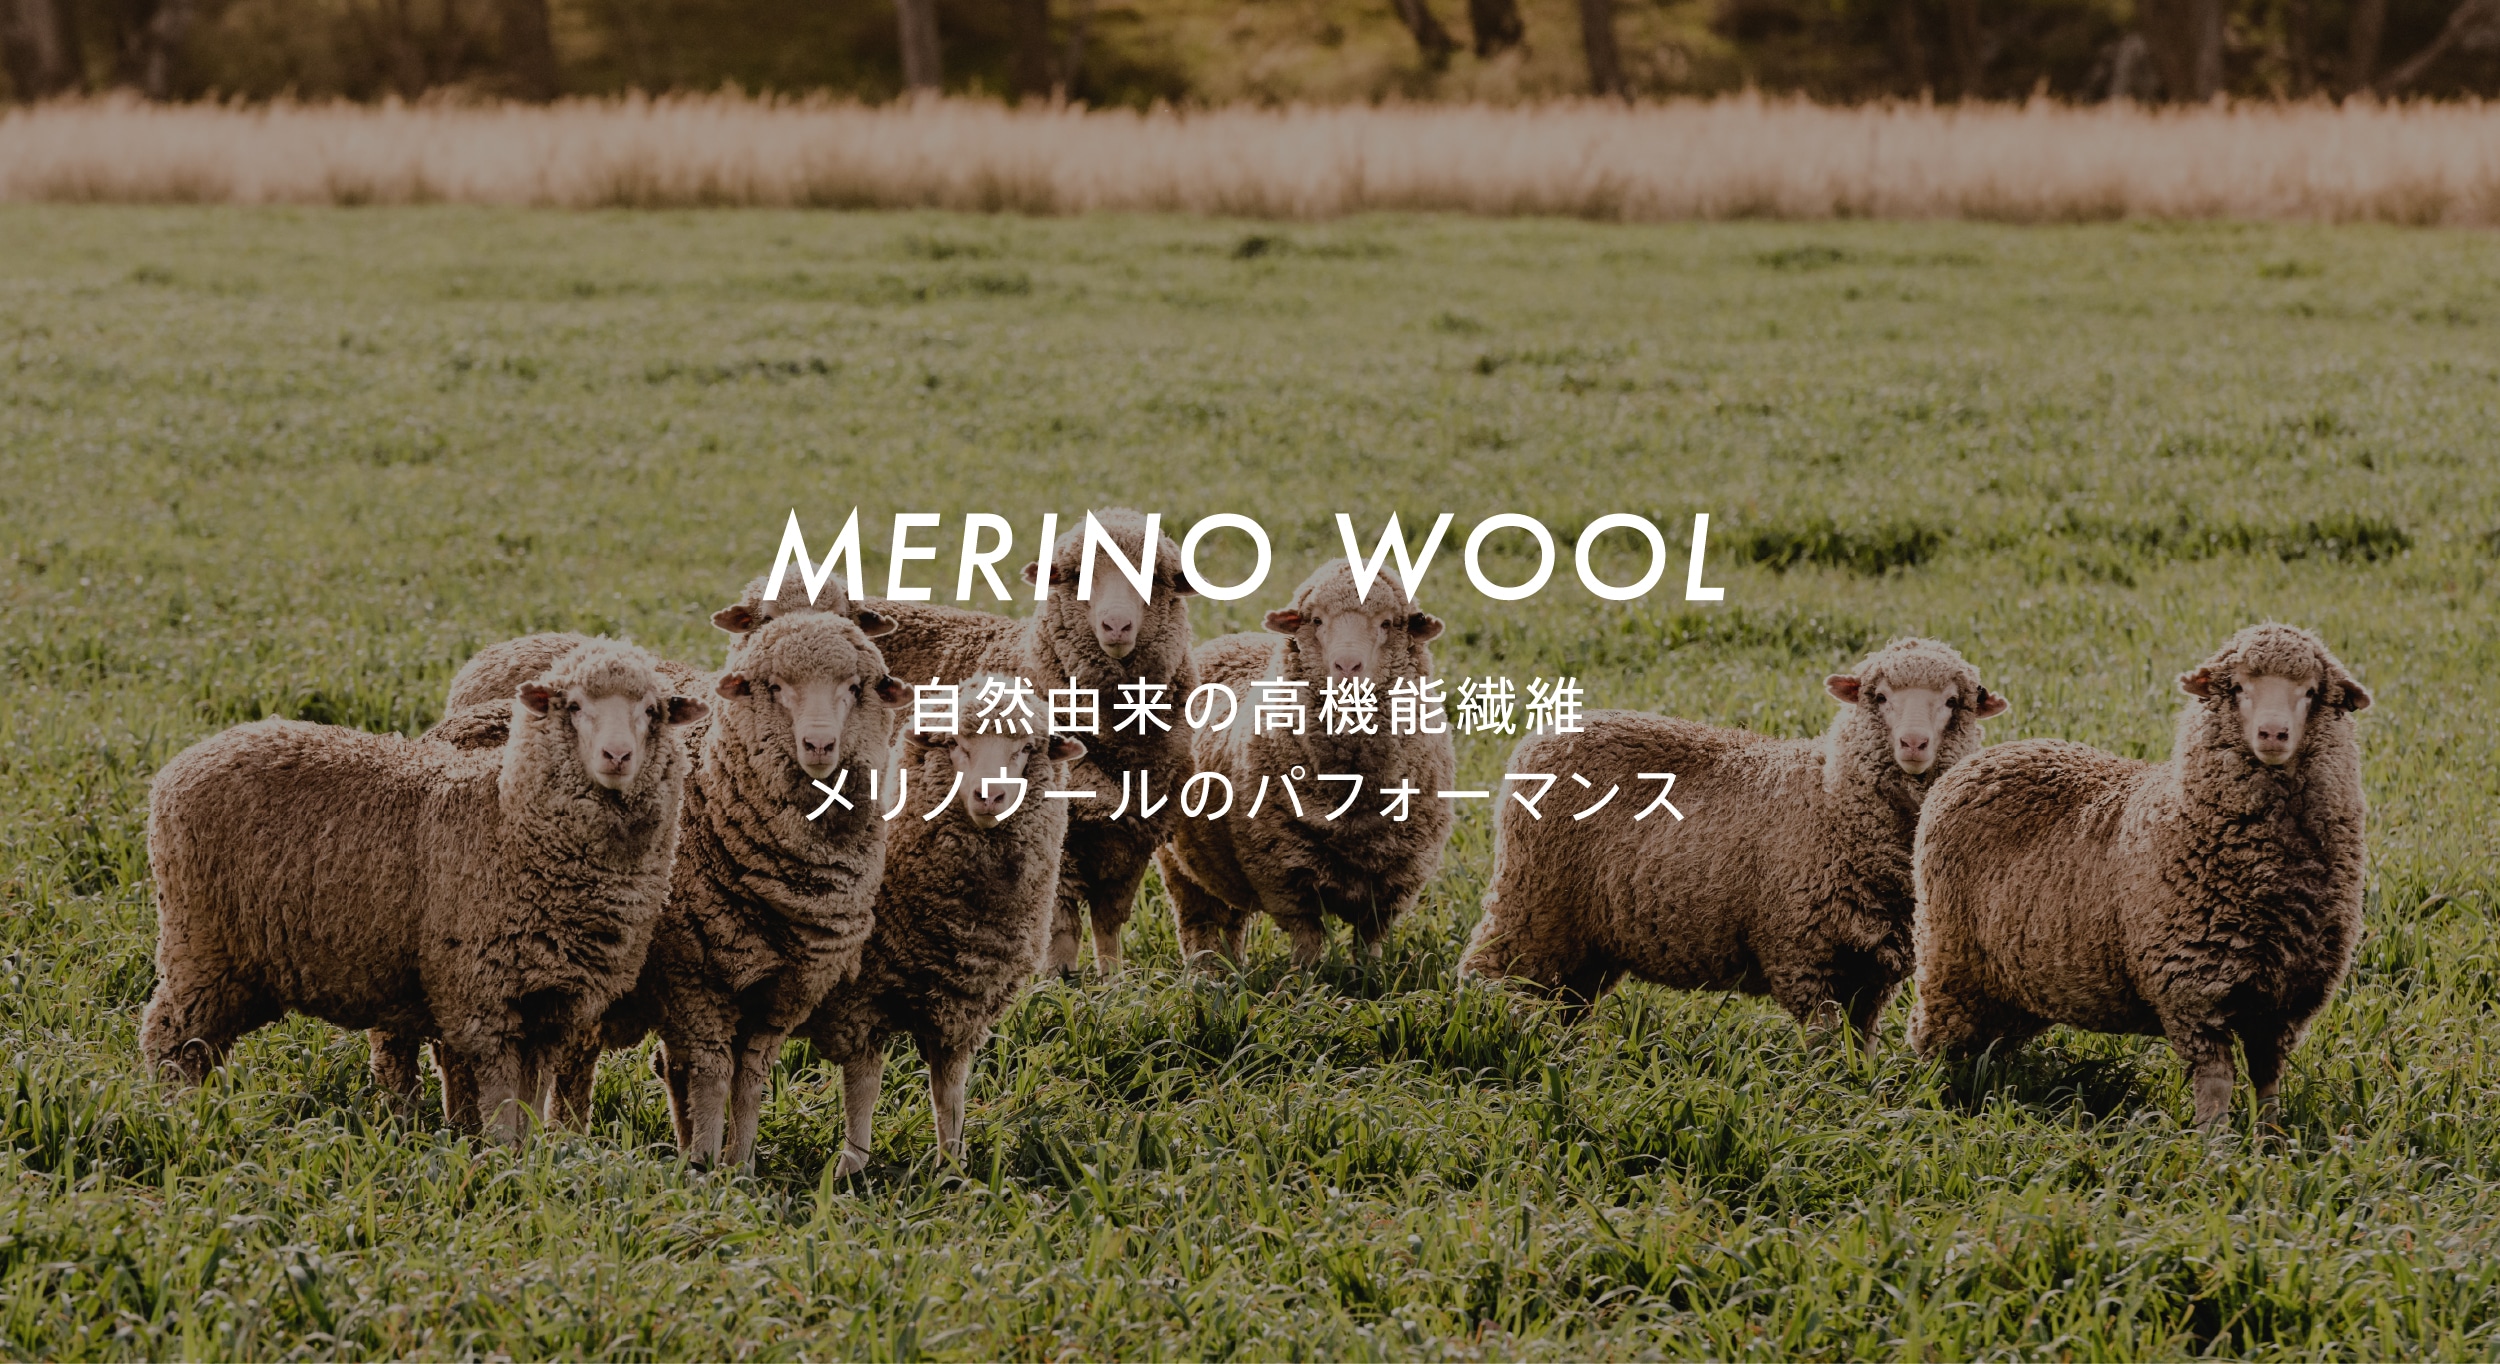 MERINO WOOL 自然由来の高機能繊維 メリノウールのパフォーマンス